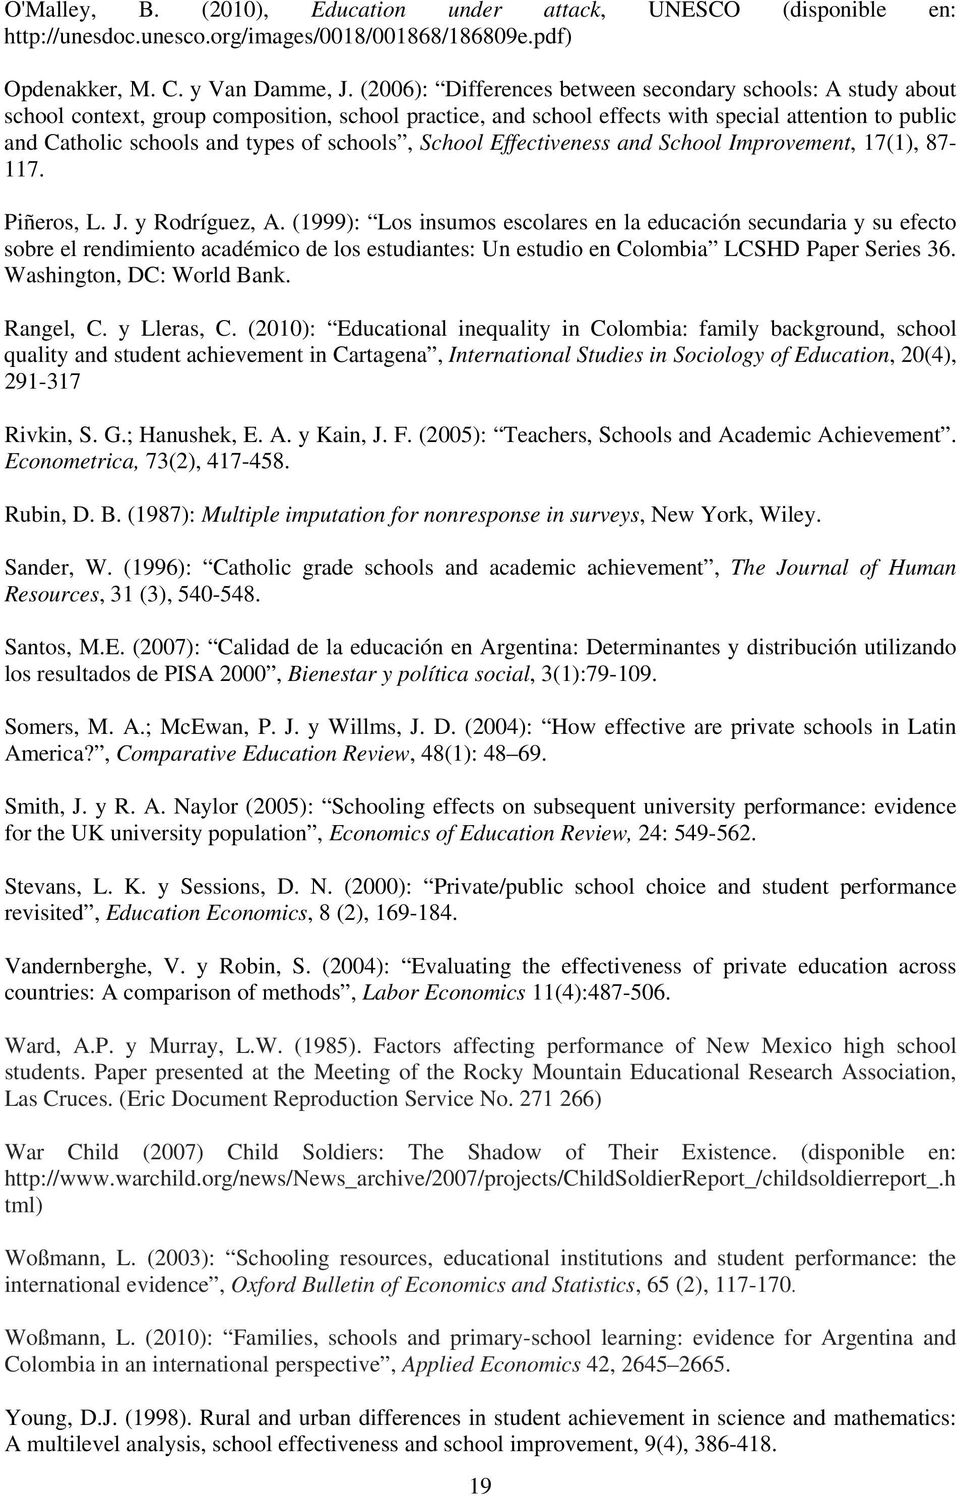 schools, School Effectiveness and School Improvement, 17(1), 87-117. Piñeros, L. J. y Rodríguez, A.